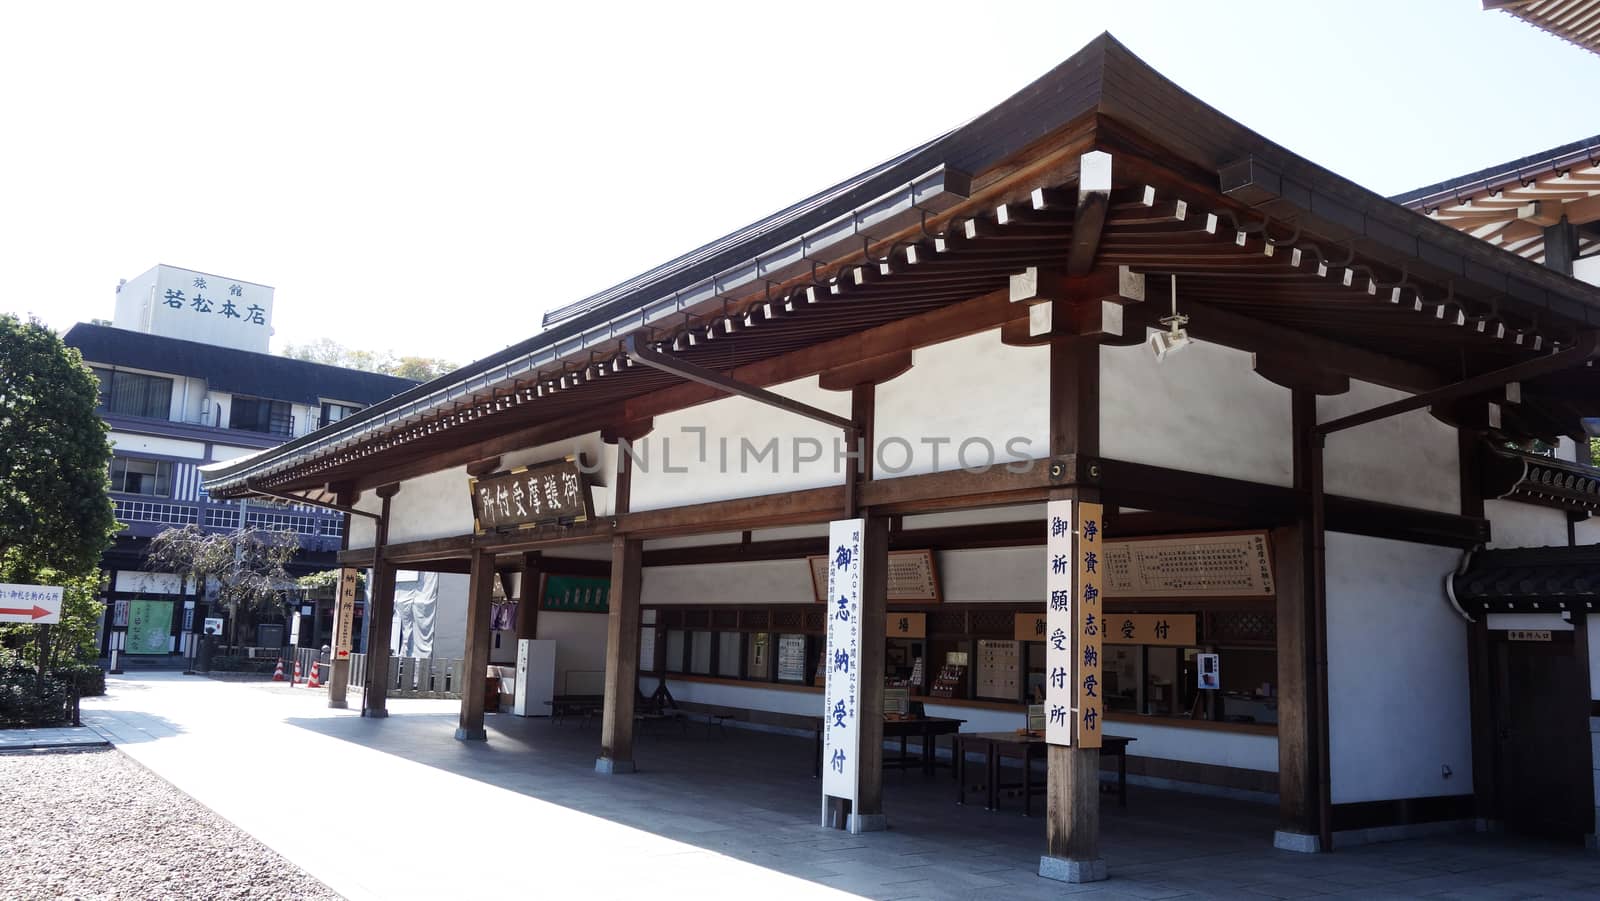 Beautiful Architecture Wood Pavilion at Naritasan Shinshoji Temple, Chiba, Japan.2017-10-25. The pavilion at Naritasan temple. Lanmark of Naritasan, Chiba, Tokyo near the Narita Airport                                